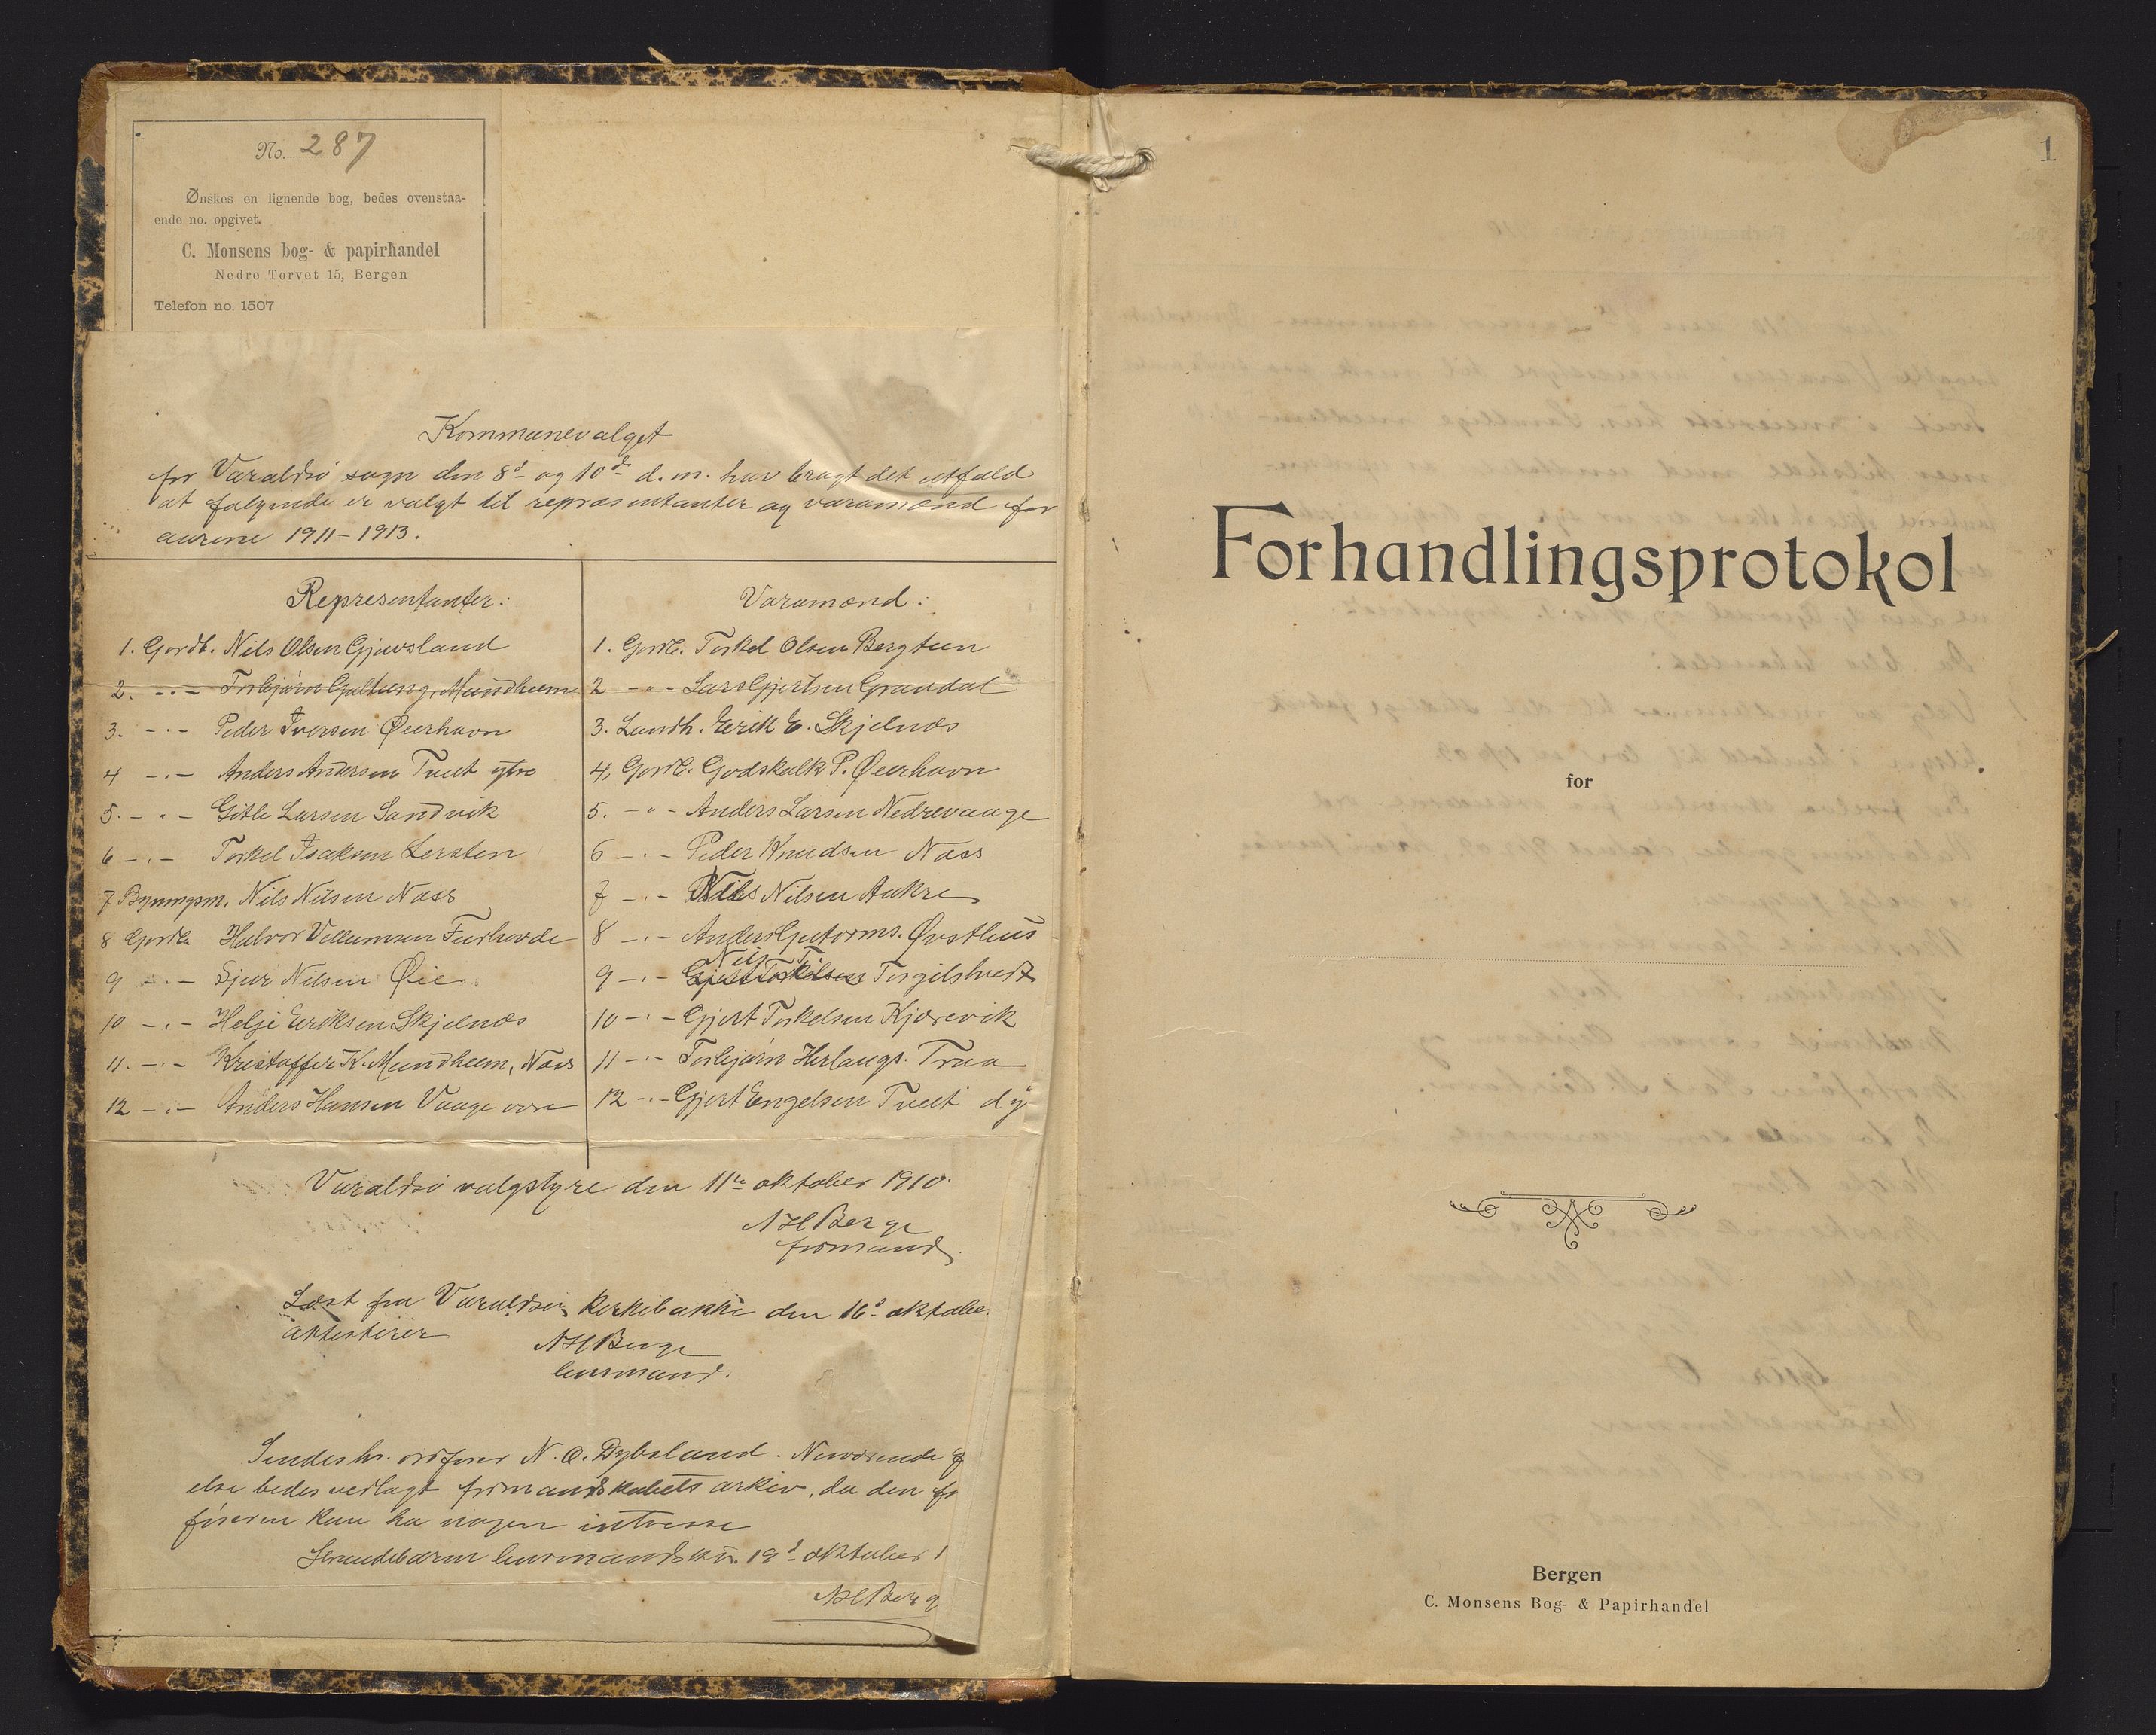 IKAH, Varaldsøy kommune. Formannskapet, A/Aa/L0002: Møtebok for formannskap og heradstyre, 1910-1916, s. 1